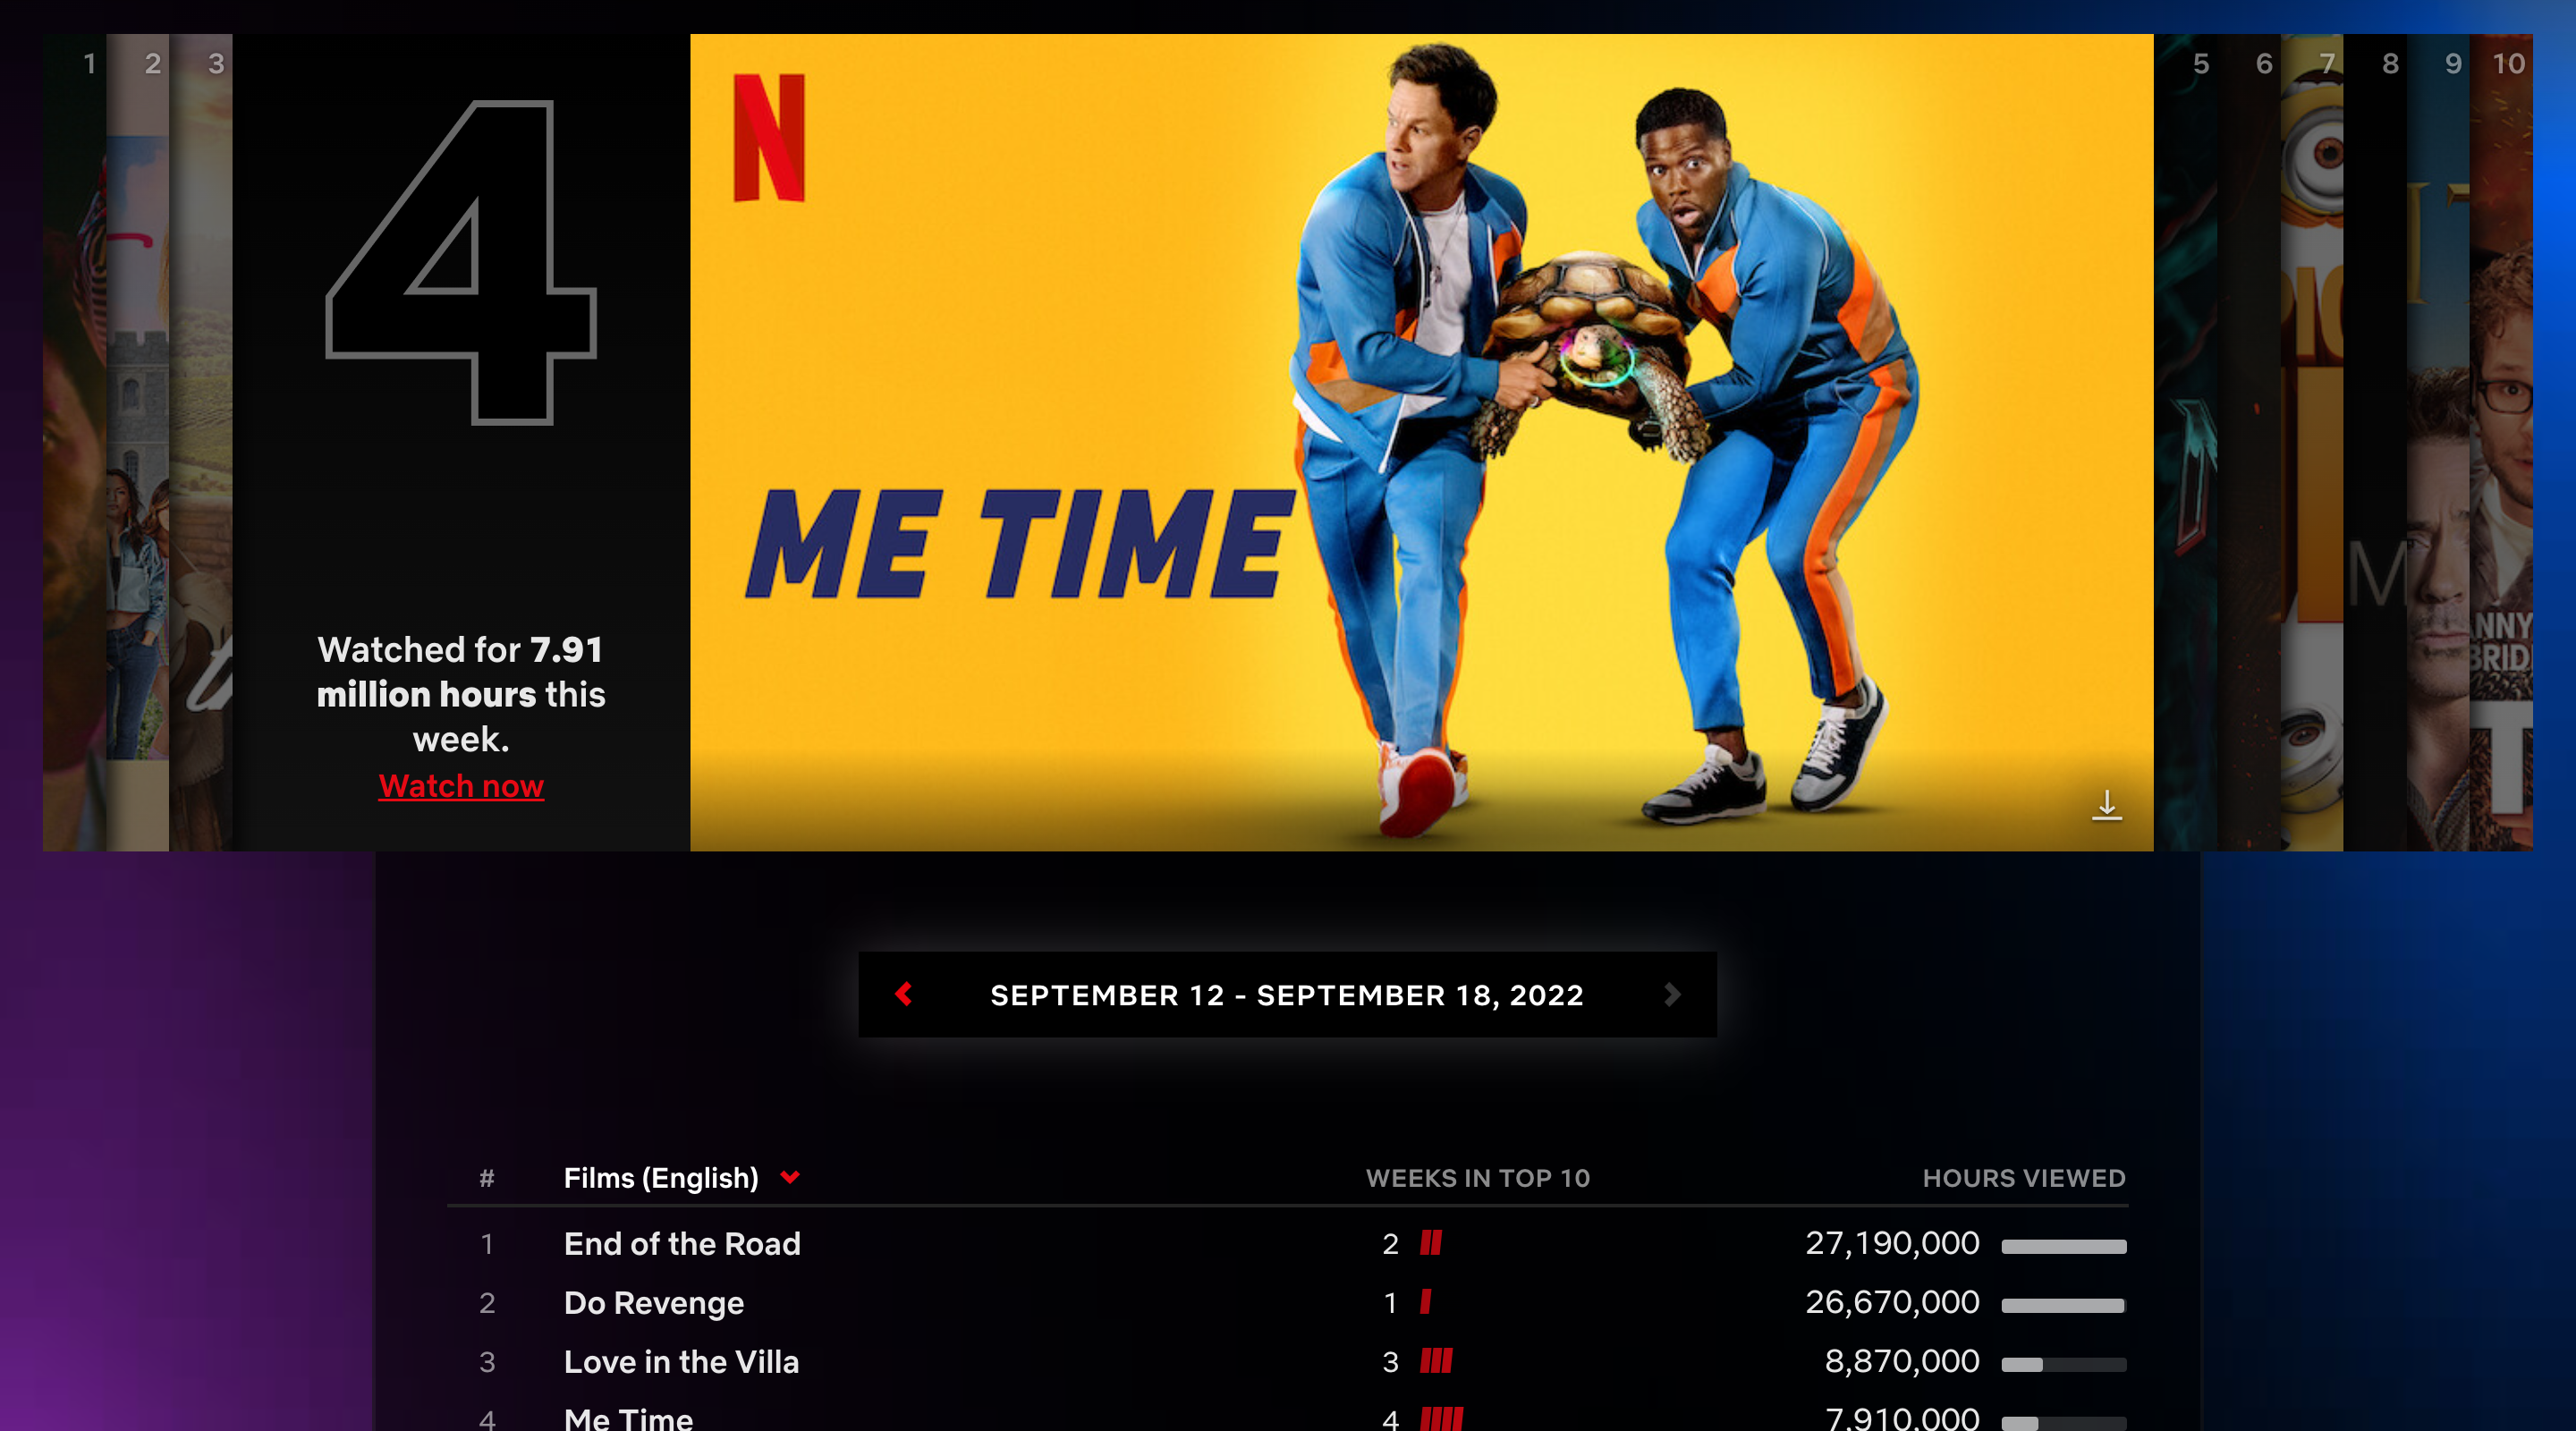 About Netflix - Top 10